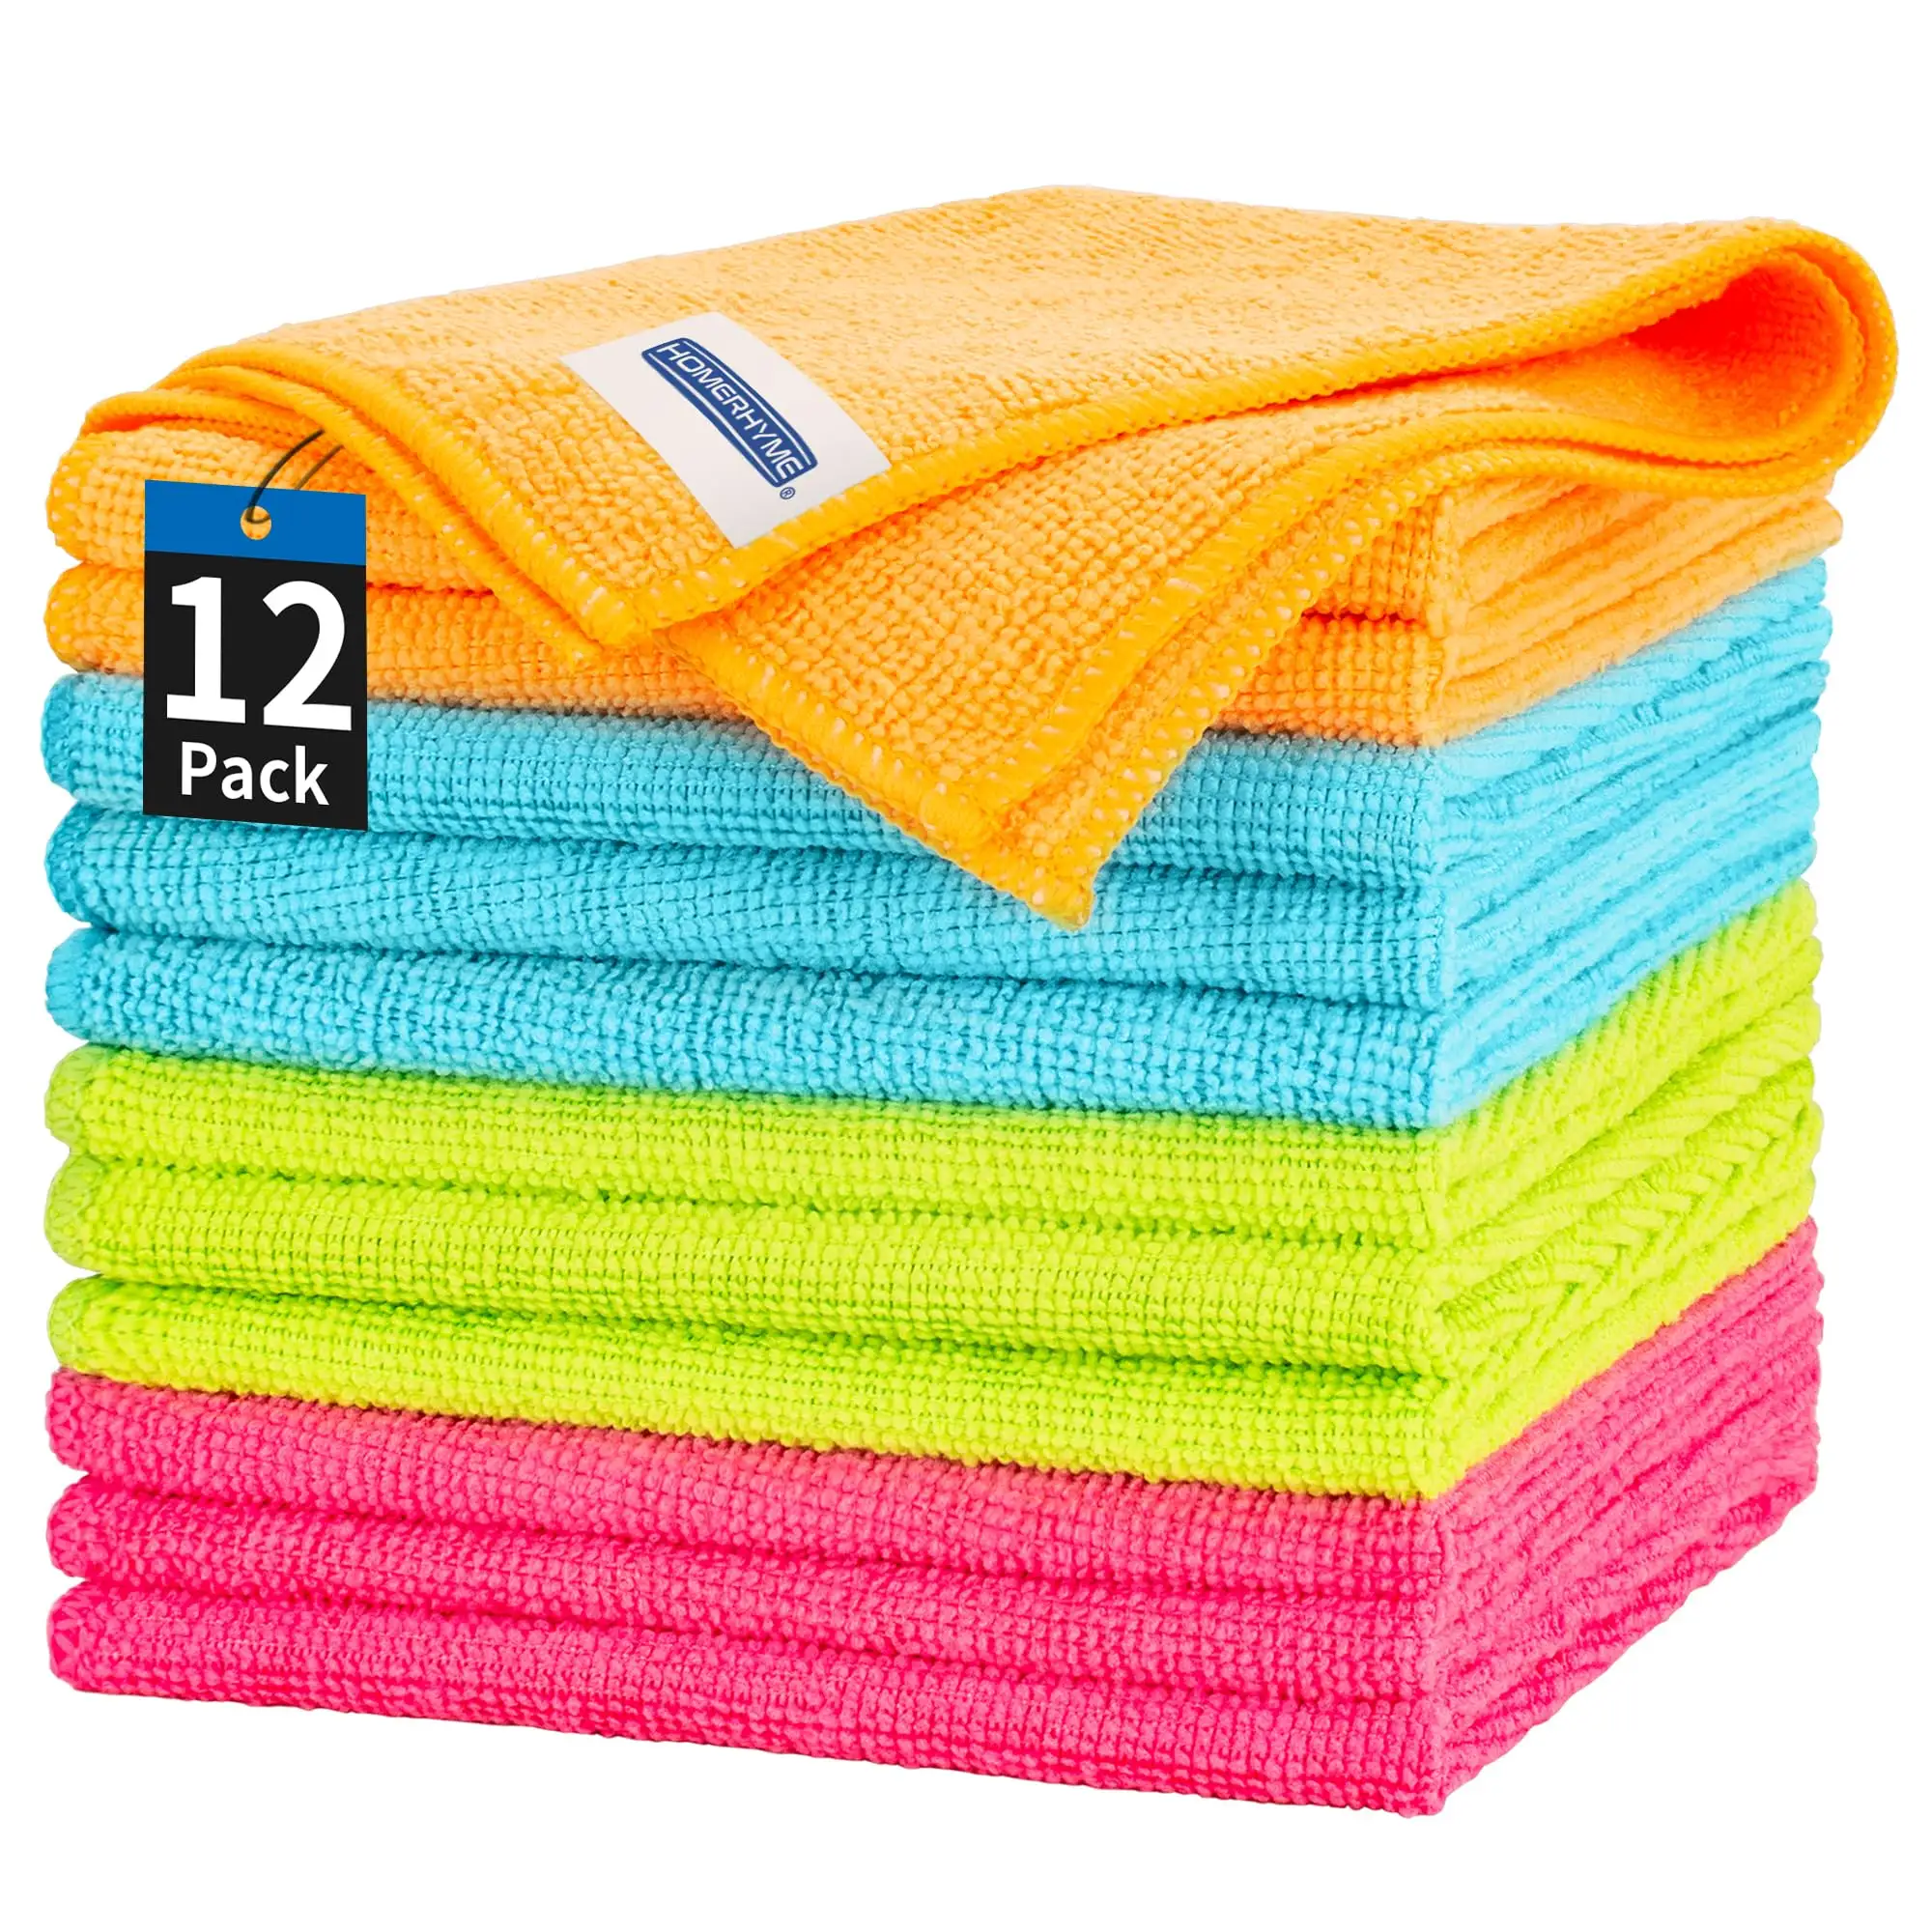 Kain pembersih Microfiber 12 buah, handuk mikrofiber dapat dicuci untuk dicuci, kain handuk dapur mobil kantor